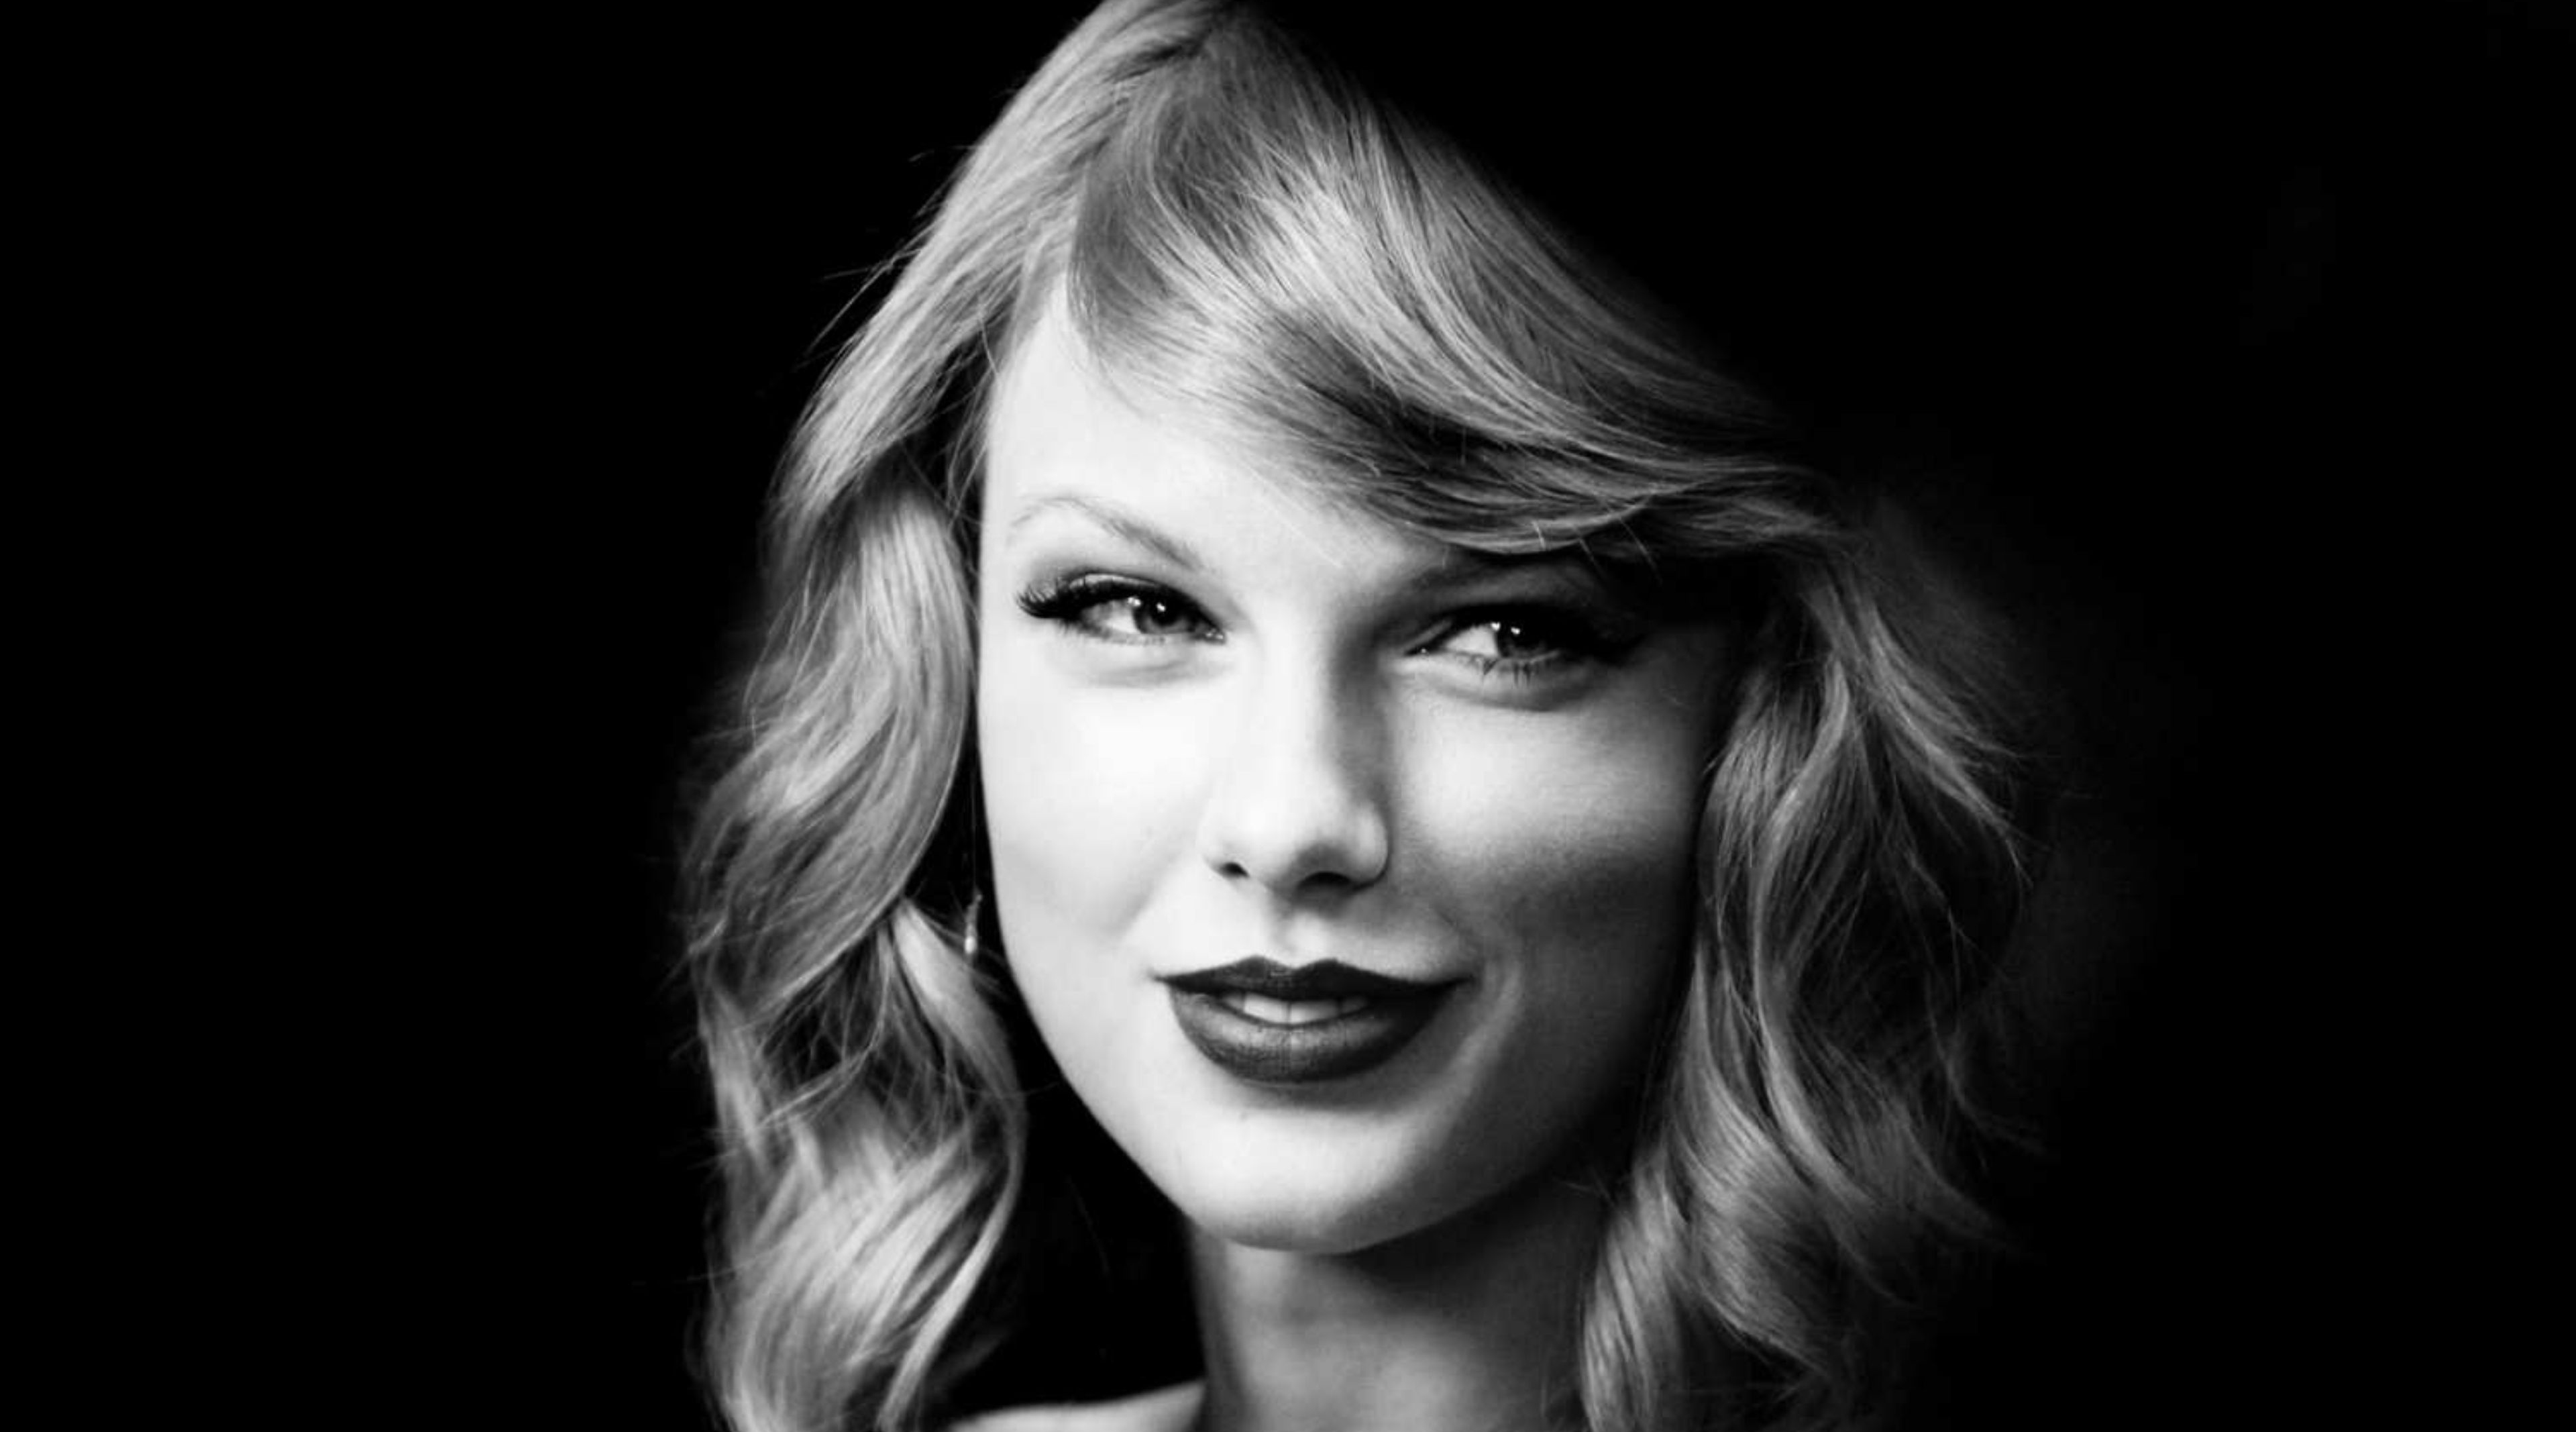 Taylor Swift dejará escuchar más de ‘Reputation’ durante juegos de futbol americano universitario. Cusica Plus.